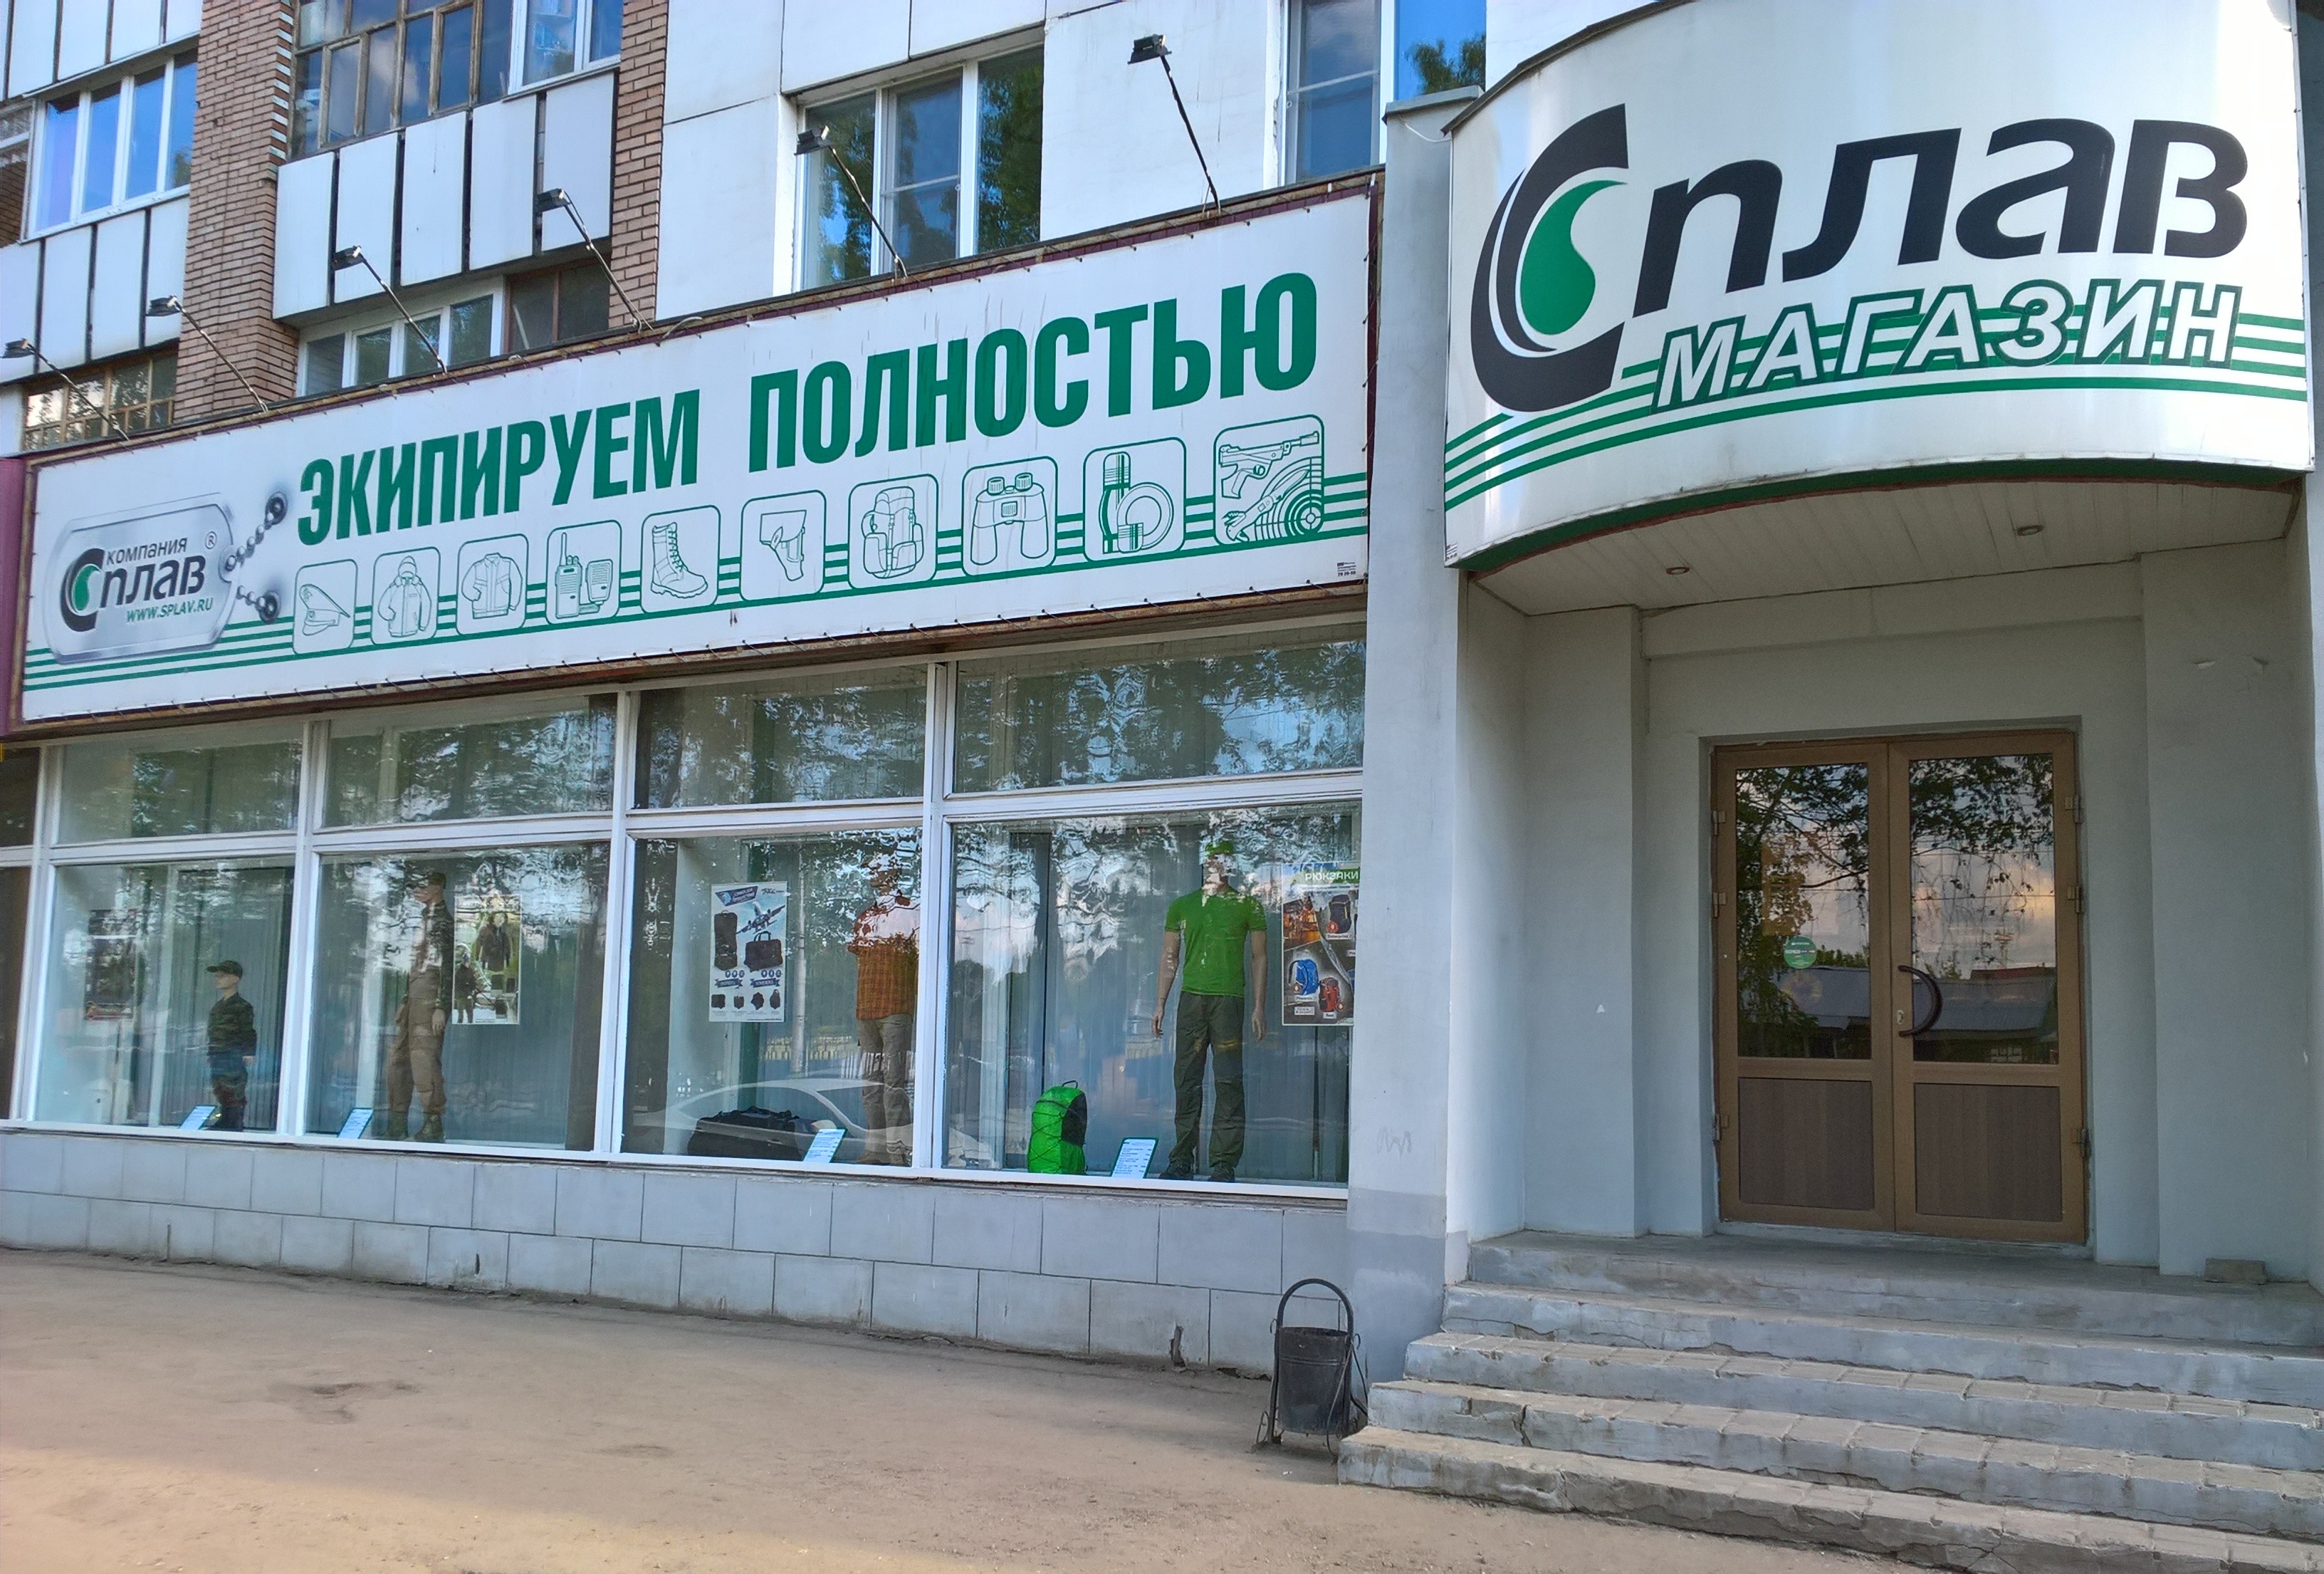 Сплав Центральный Магазин